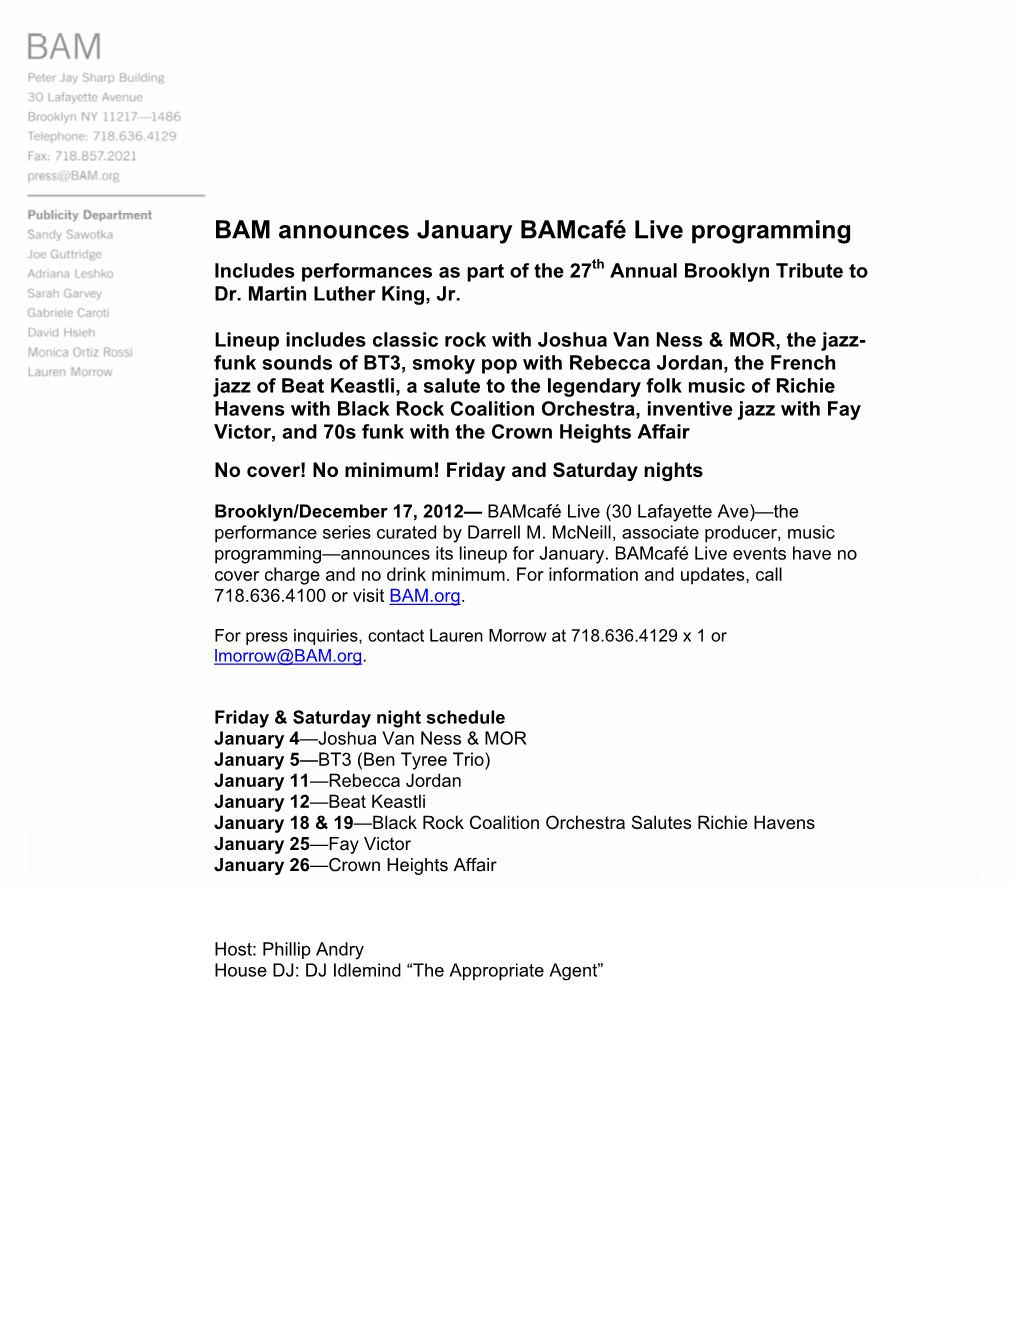 BAM Announces January Bamcafé Live Programming